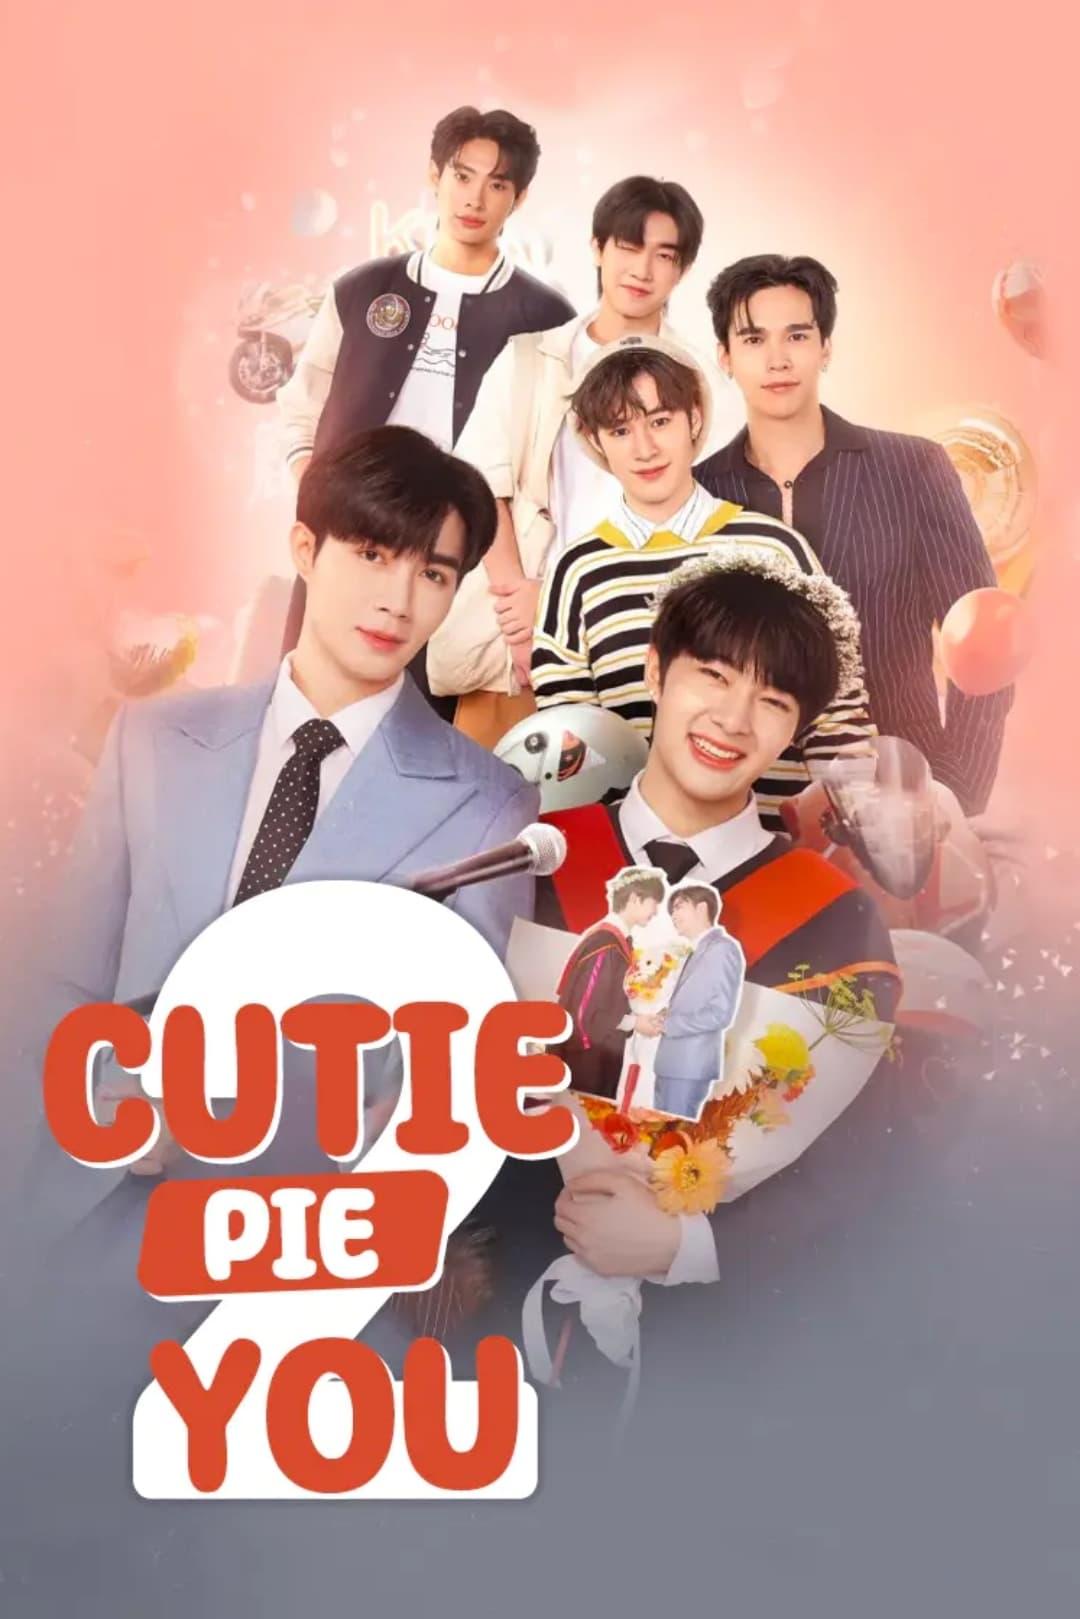 Cutie Pie poster